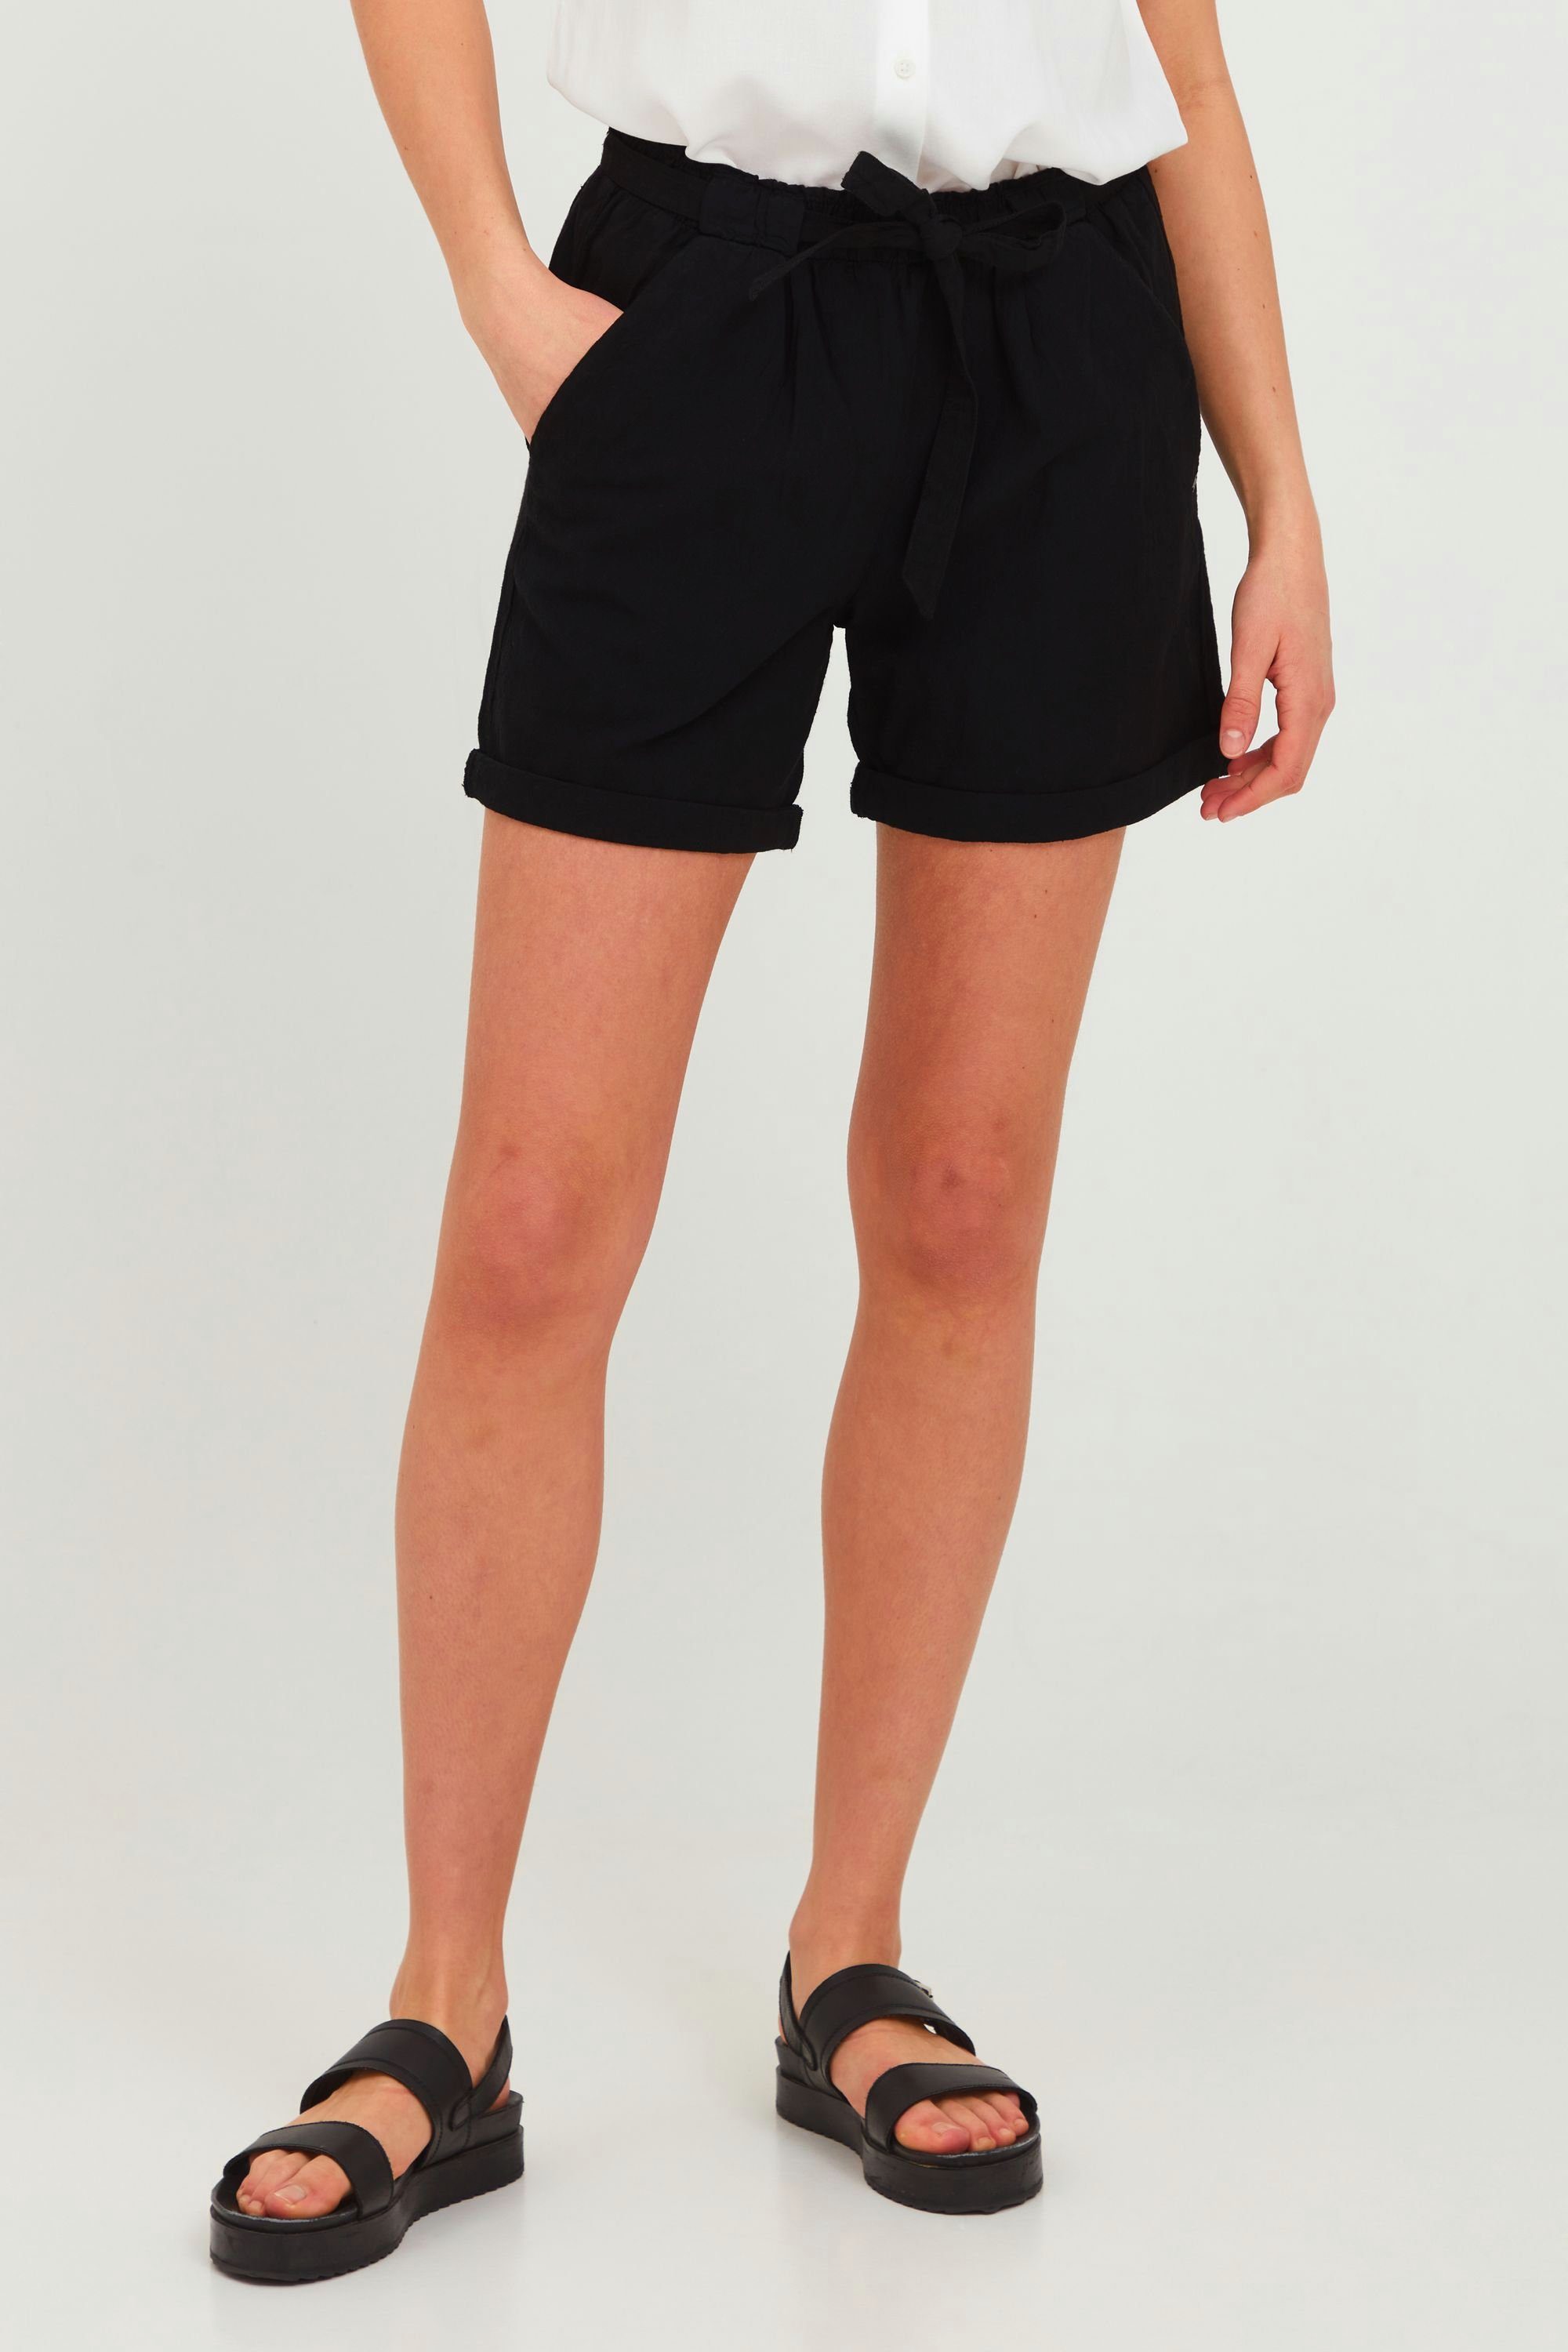 Damen Shorts Große Größen » Plus Size Shorts kaufen | OTTO